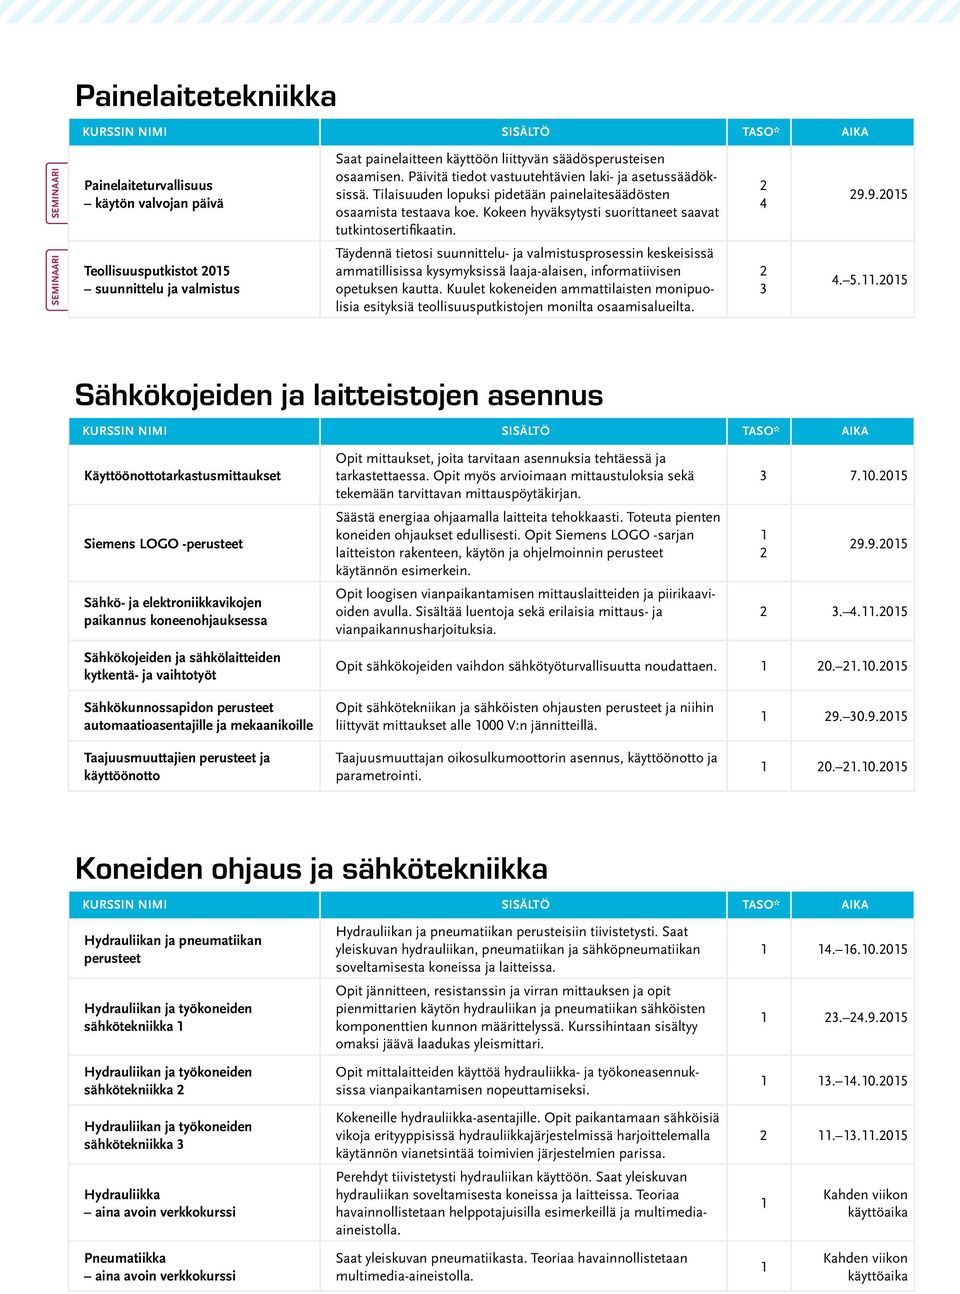 9.05 Teollisuusputkistot 05 suunnittelu ja valmistus Täydennä tietosi suunnittelu- ja valmistusprosessin keskeisissä ammatillisissa kysymyksissä laaja-alaisen, informatiivisen opetuksen kautta.